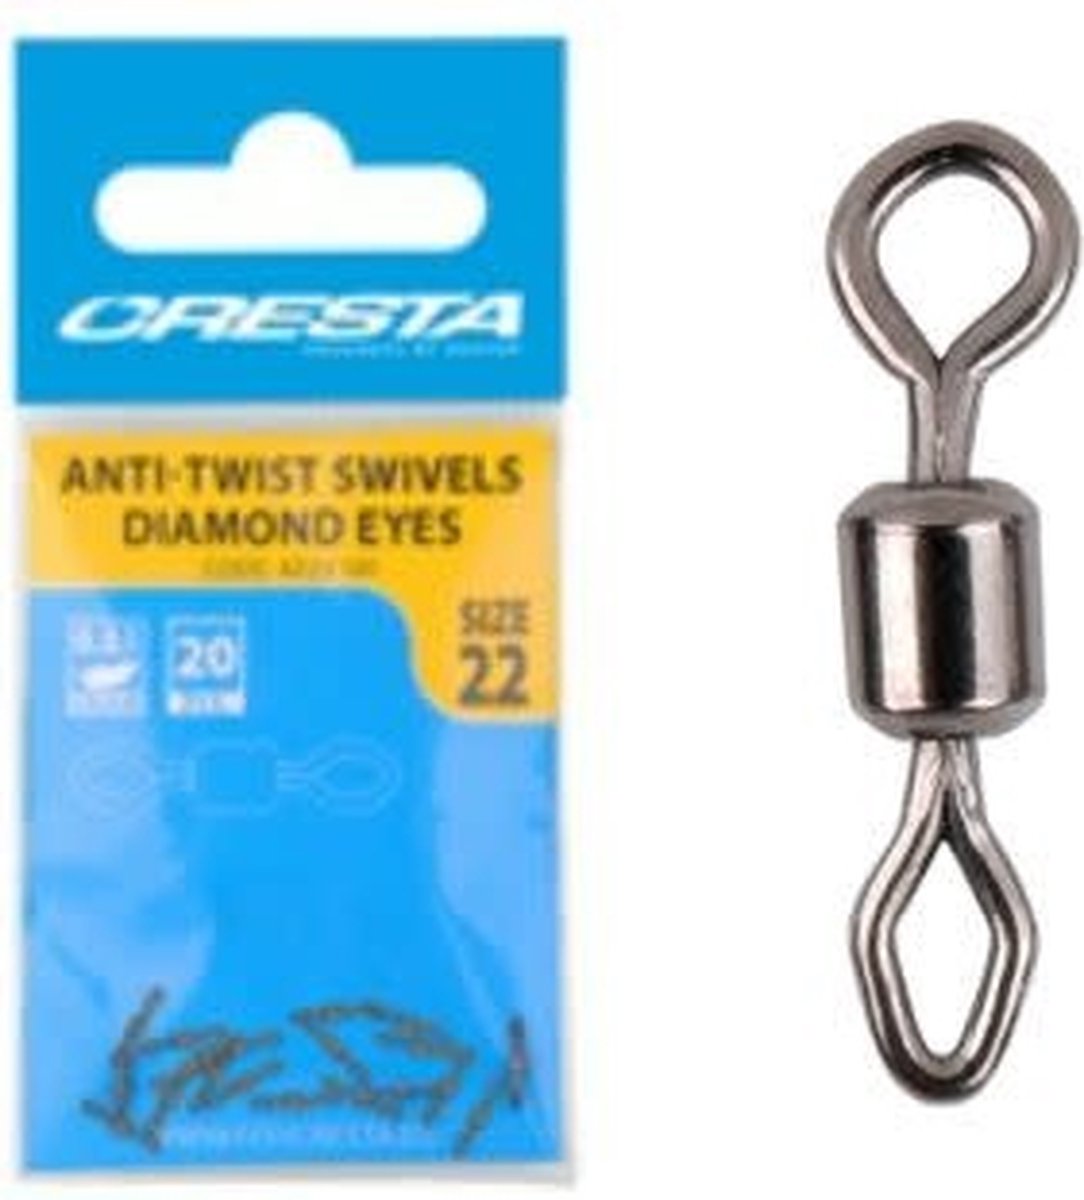 Cresta Anti-Twist Swivels Combi Eyes (20 pcs) - Maat : nr 20 - Cresta